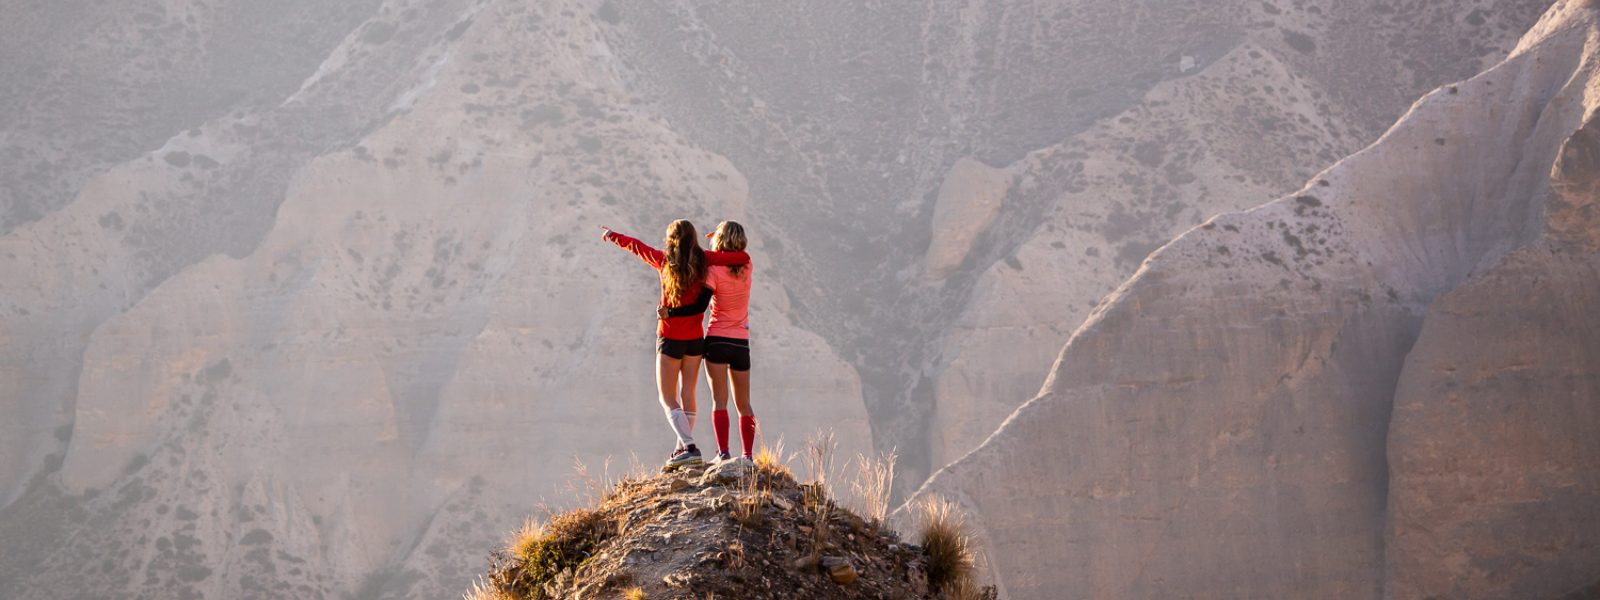 Twee vrouwen juichen een bergtop toe